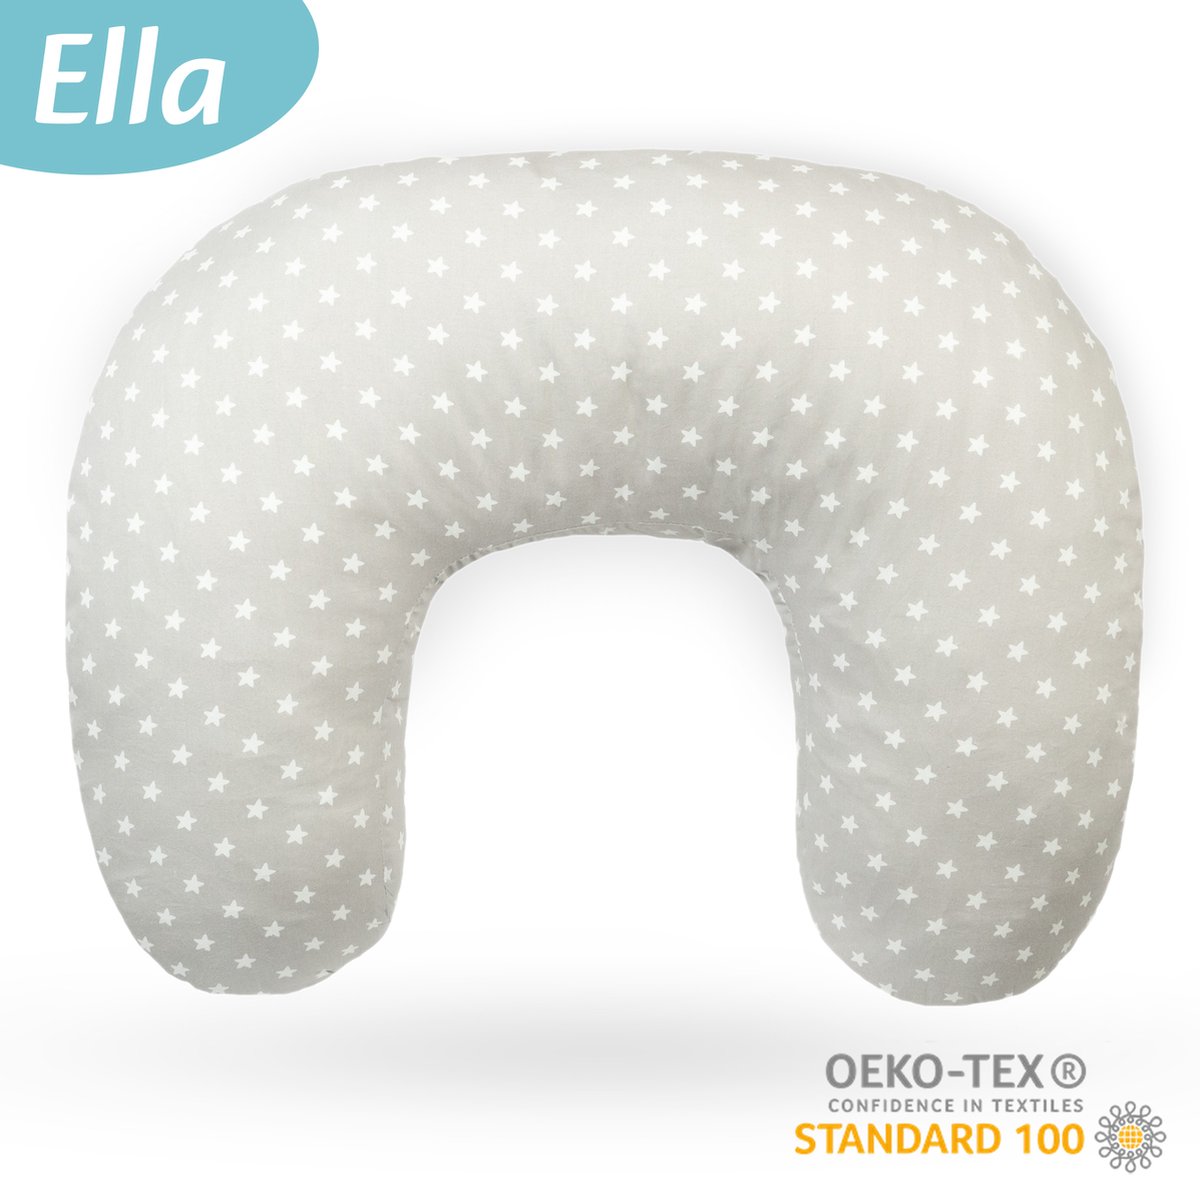 Ella Voedingskussen met hoes van 100% katoen - Zwangerschapskussen - Inclusief afneembare en wasbare hoes - Grijs met witte sterretjes - Ella